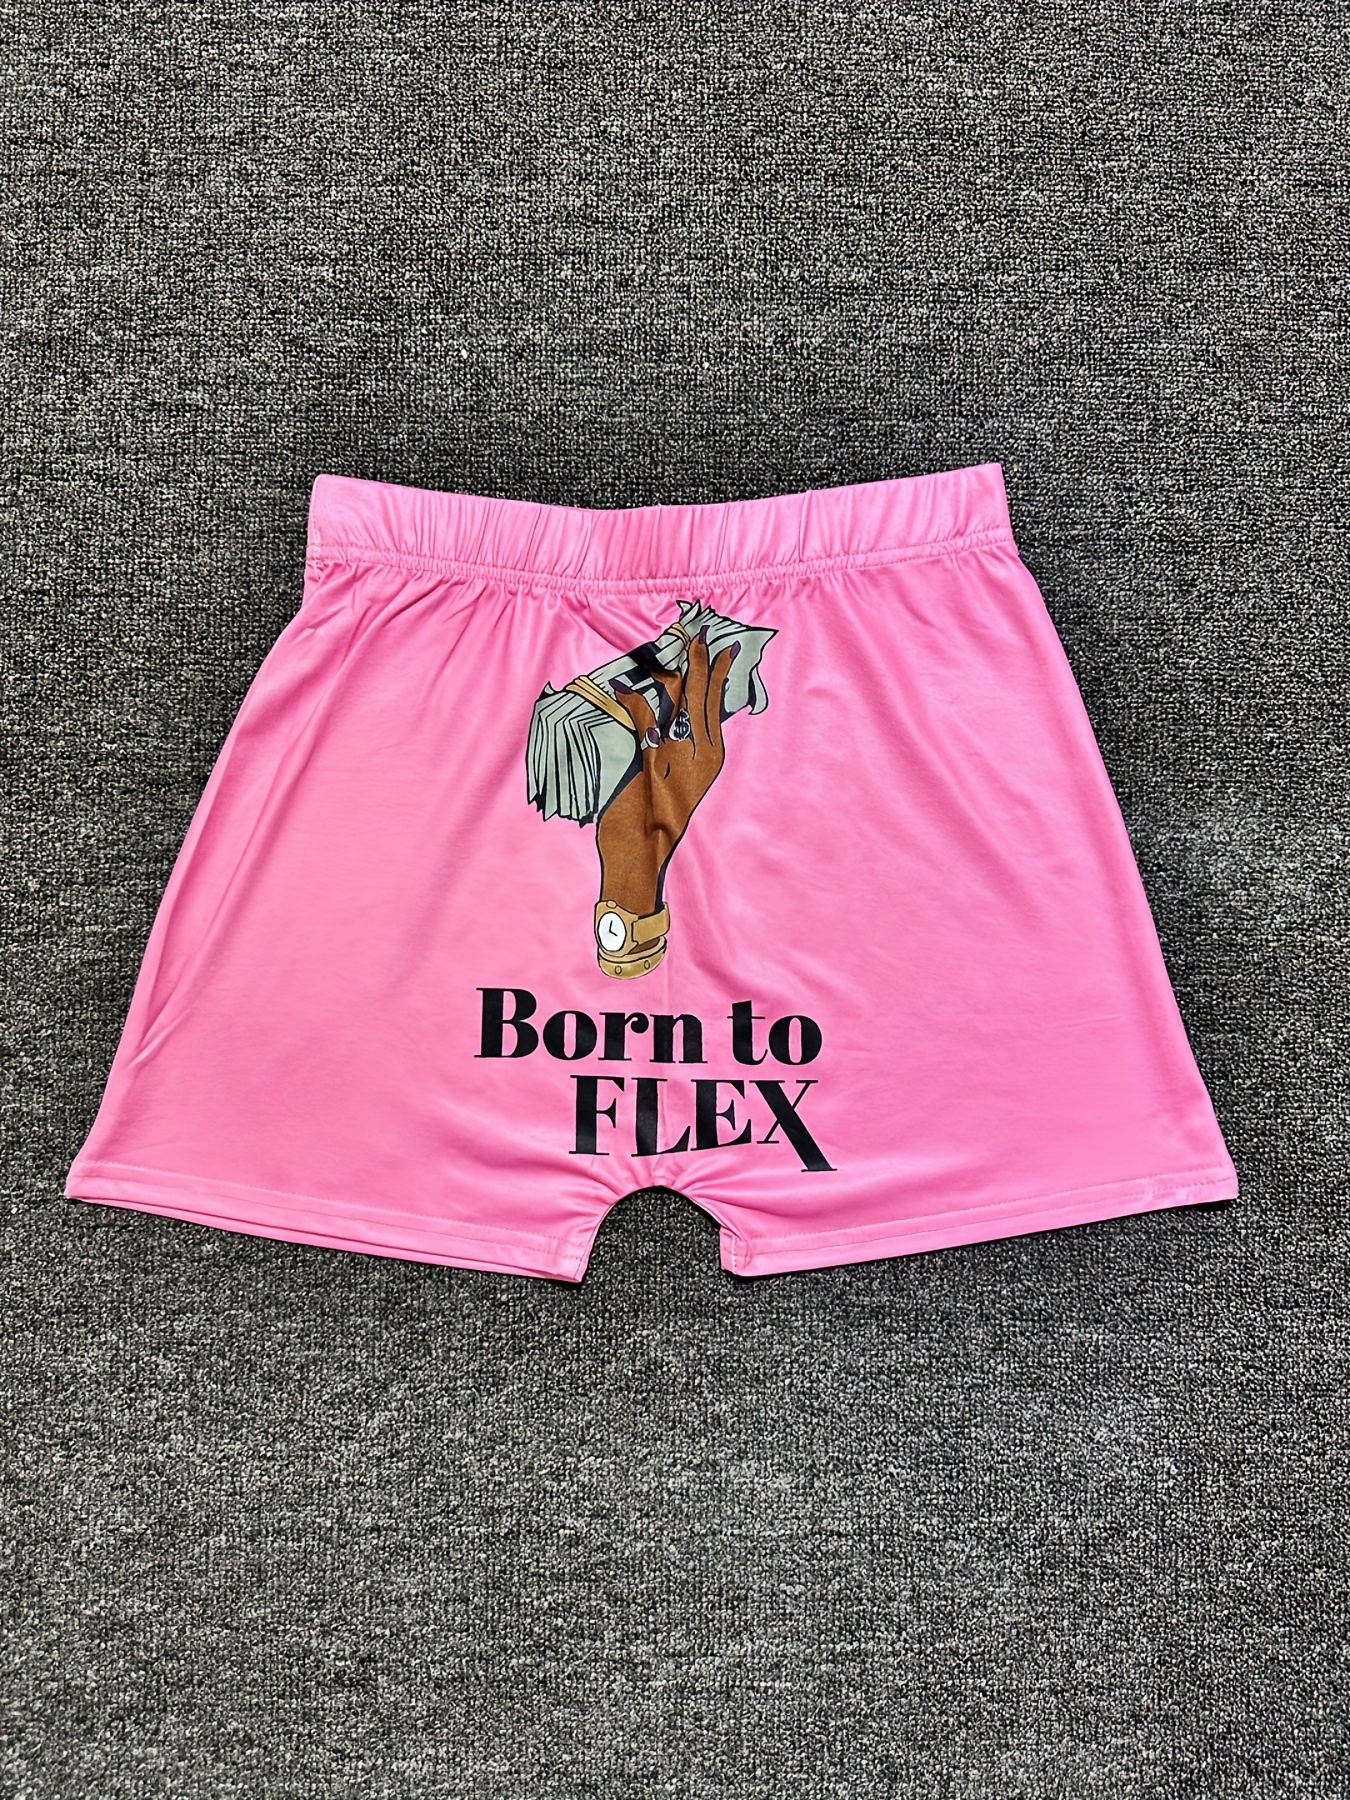 Pantalones cortos deportivos con letras rosas para mujer, Shorts